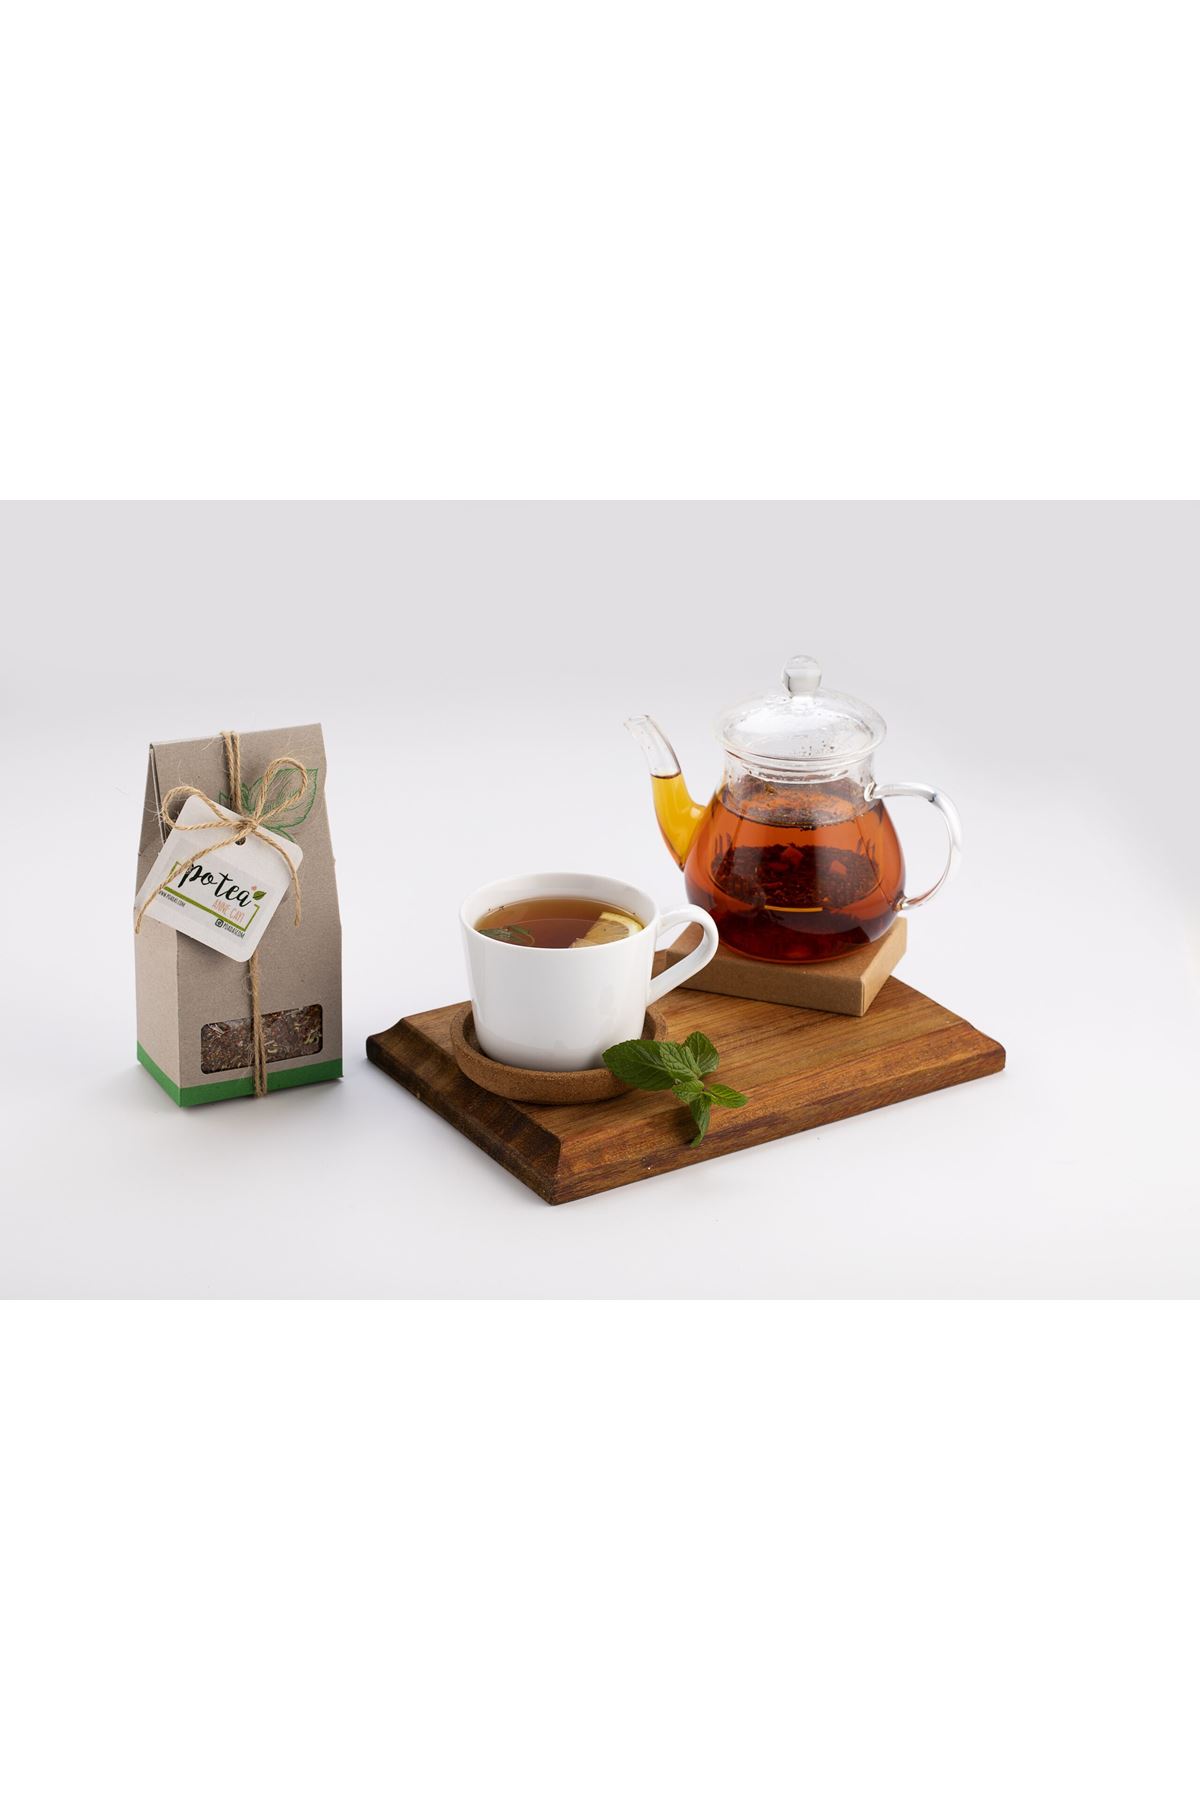 PO’TEA Anne Çayı – 100 gr. – Emziren Anneler İçin Katkısız Çay